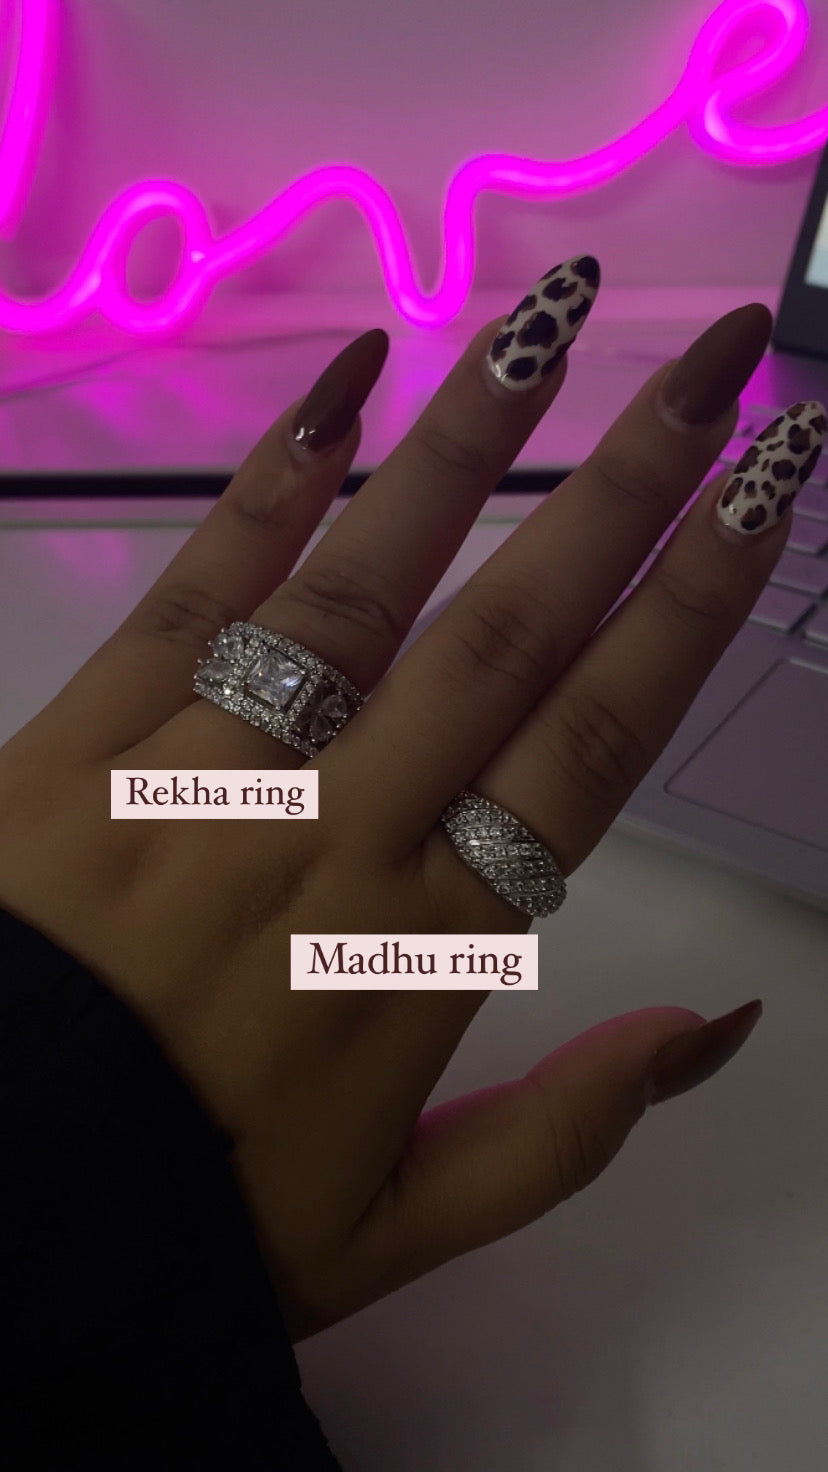 Rekha ring & Madhu ring